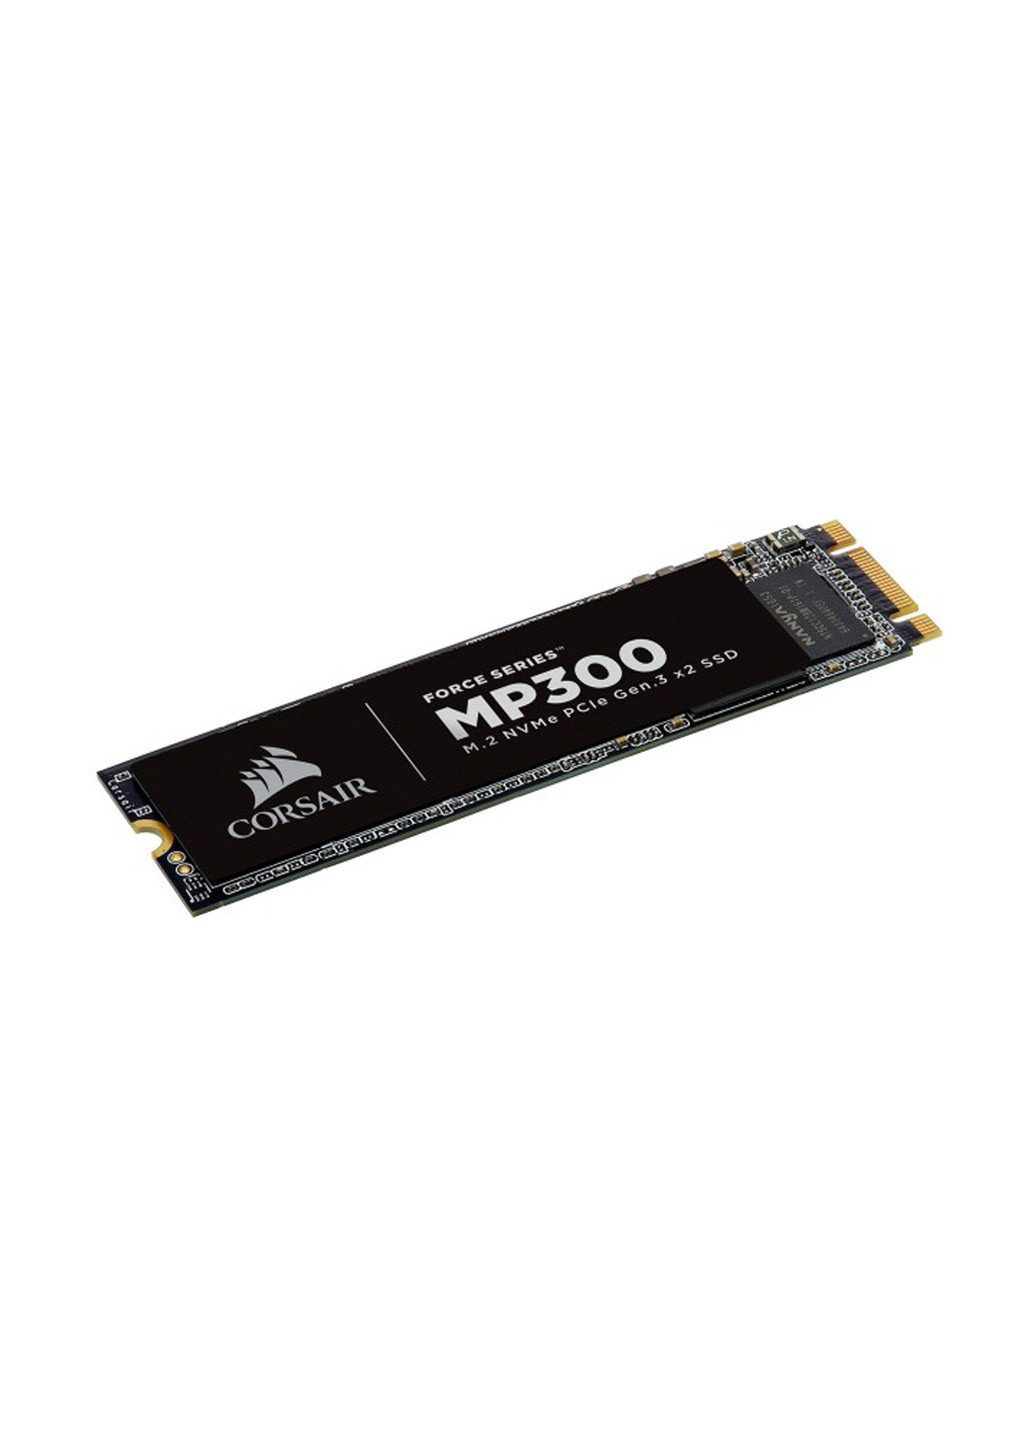 Внутренний SSD M.2 120GB MP300, N NVMe CSSD-F120GBMP300 (CSSD-F120GBMP300) Corsair внутренний ssd corsair m.2 120gb mp300, n nvme cssd-f120gbmp300 (cssd-f120gbmp300) (136894005)